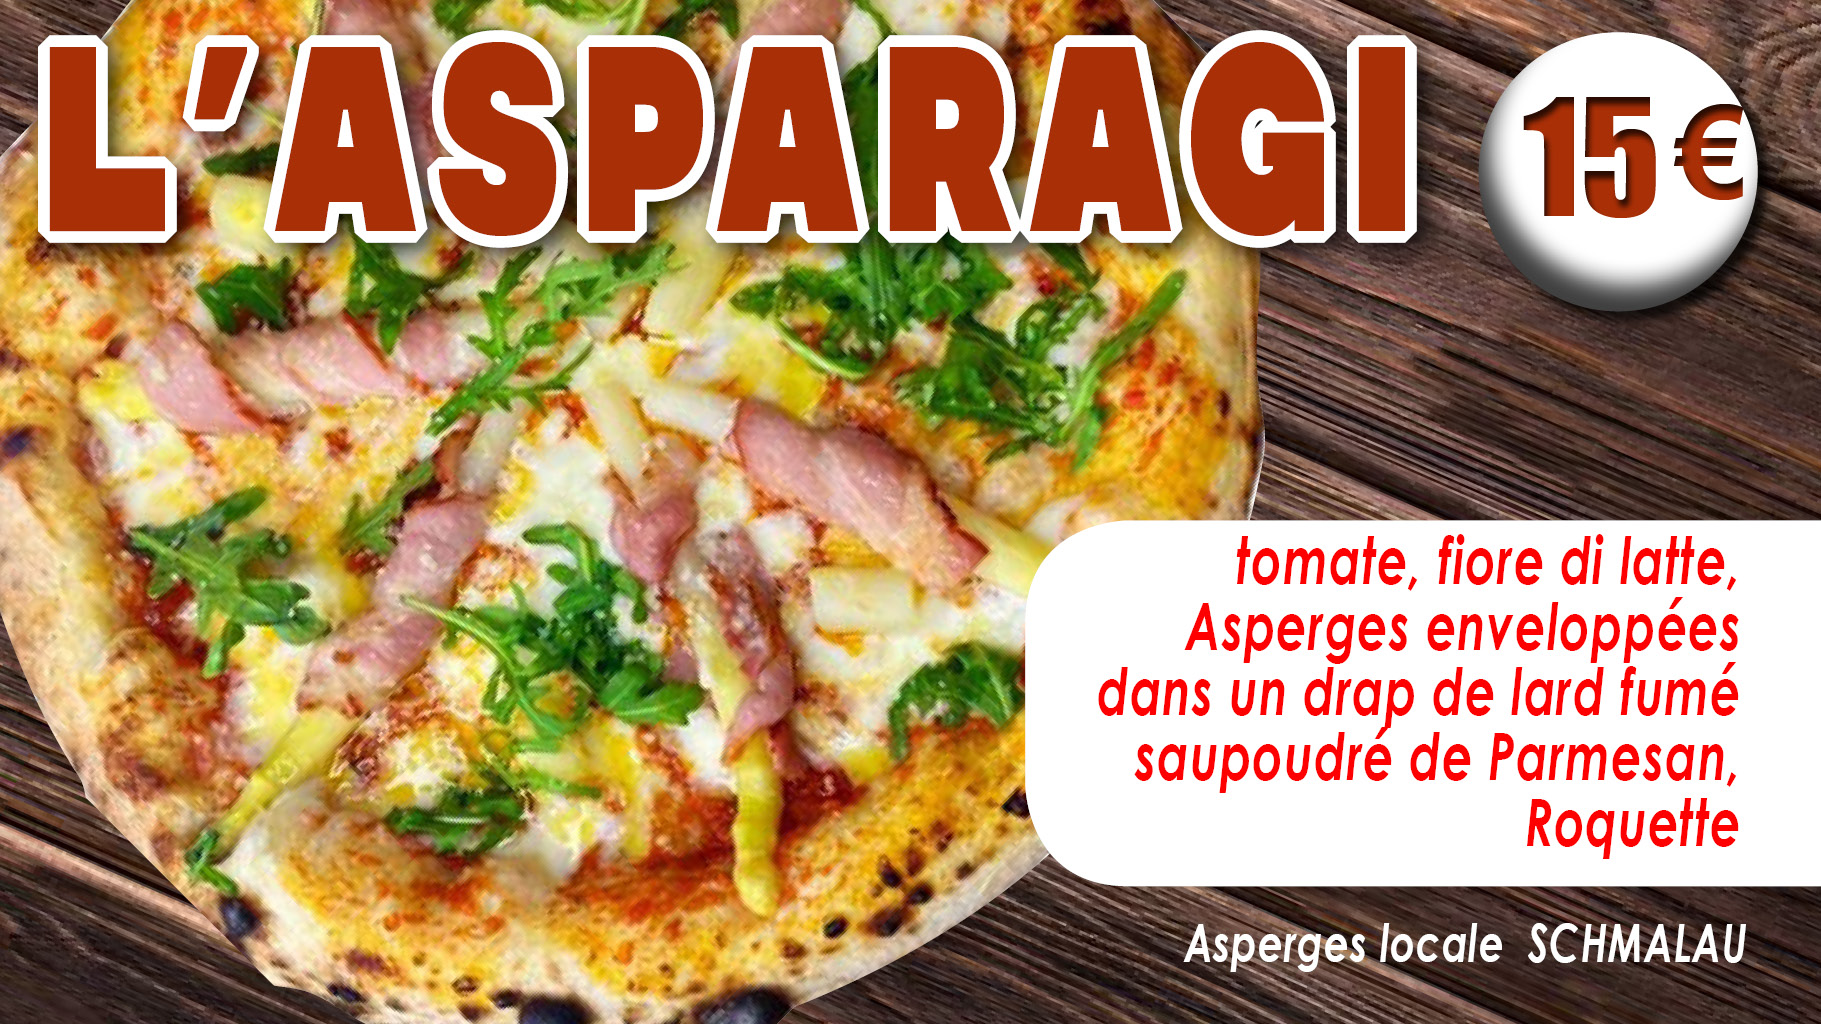 MEP-SITE_carrousel-Asparagi